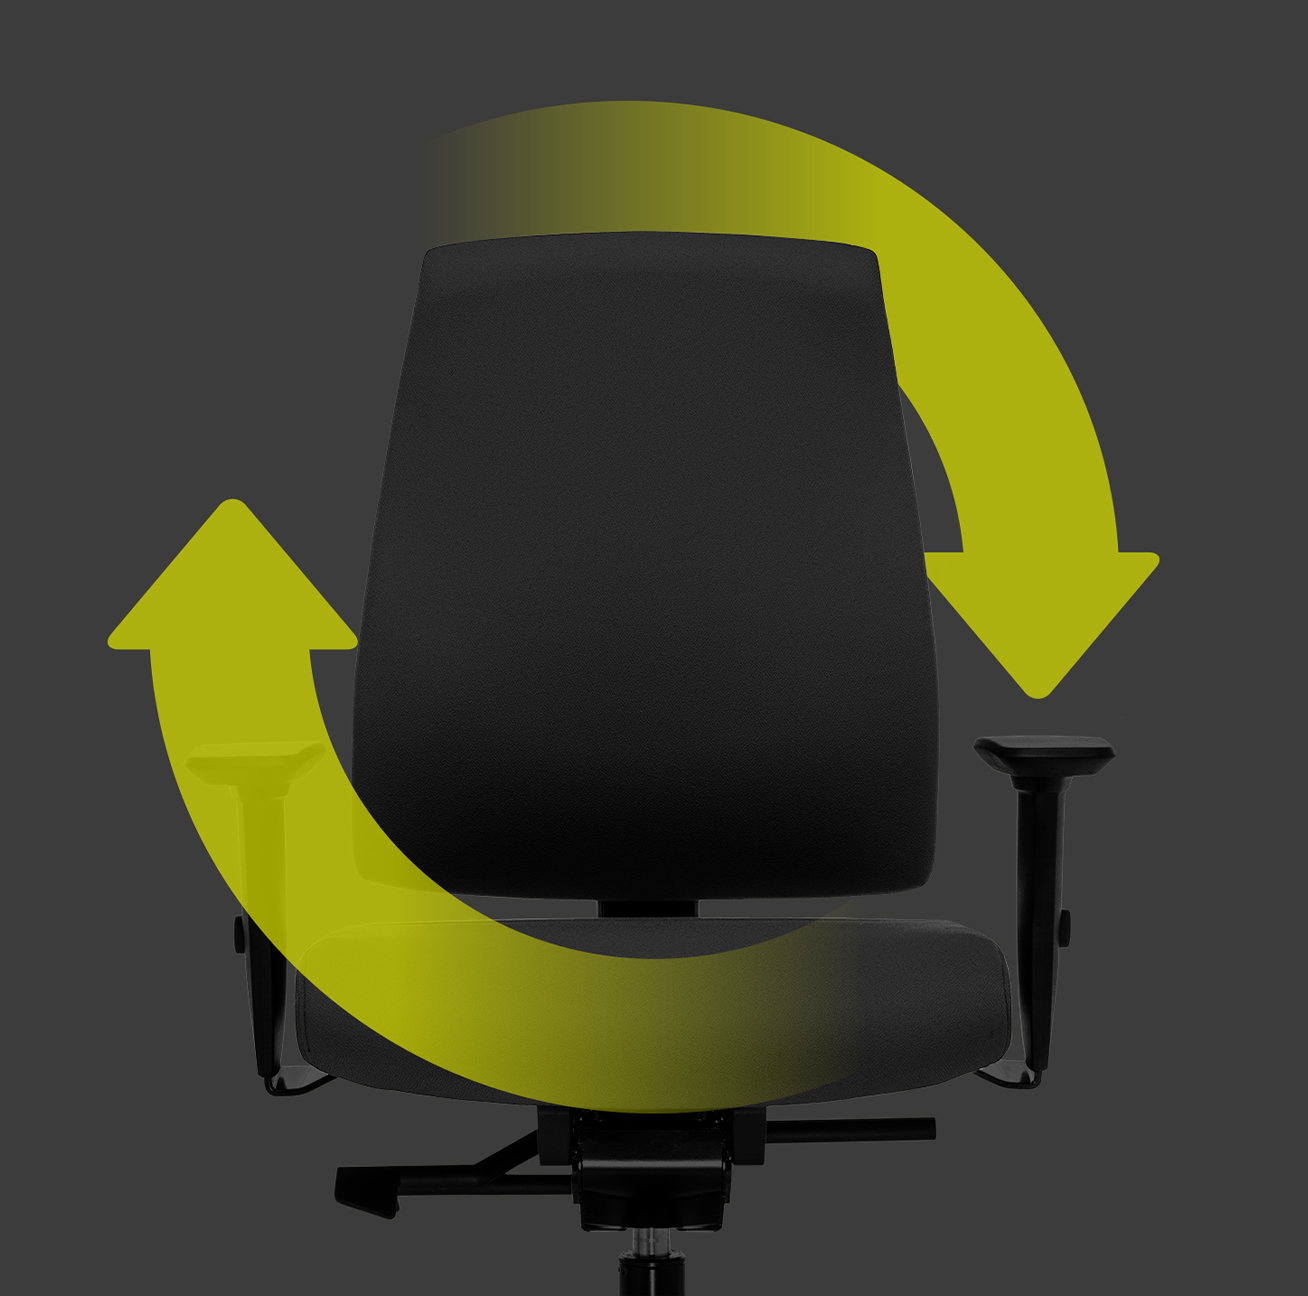 Ergonomischer Drehstuhl Goal in Seitenansicht mit schwarzem Polsterrücken, schwarzem Sitzbezug, schwarzen T-Armlehnen und Kunststoffteilen in Schwarz  (u.a. Fußkreuz, Säulenfunktion) mit zwei grünen Pfeilen, die um den Stuhl herum einen Kreis bilden. Dies weist auf die Nachhaltigkeit und Wiederverwendbarkeit des Stuhls hin. | by Hans-Georg Piorek